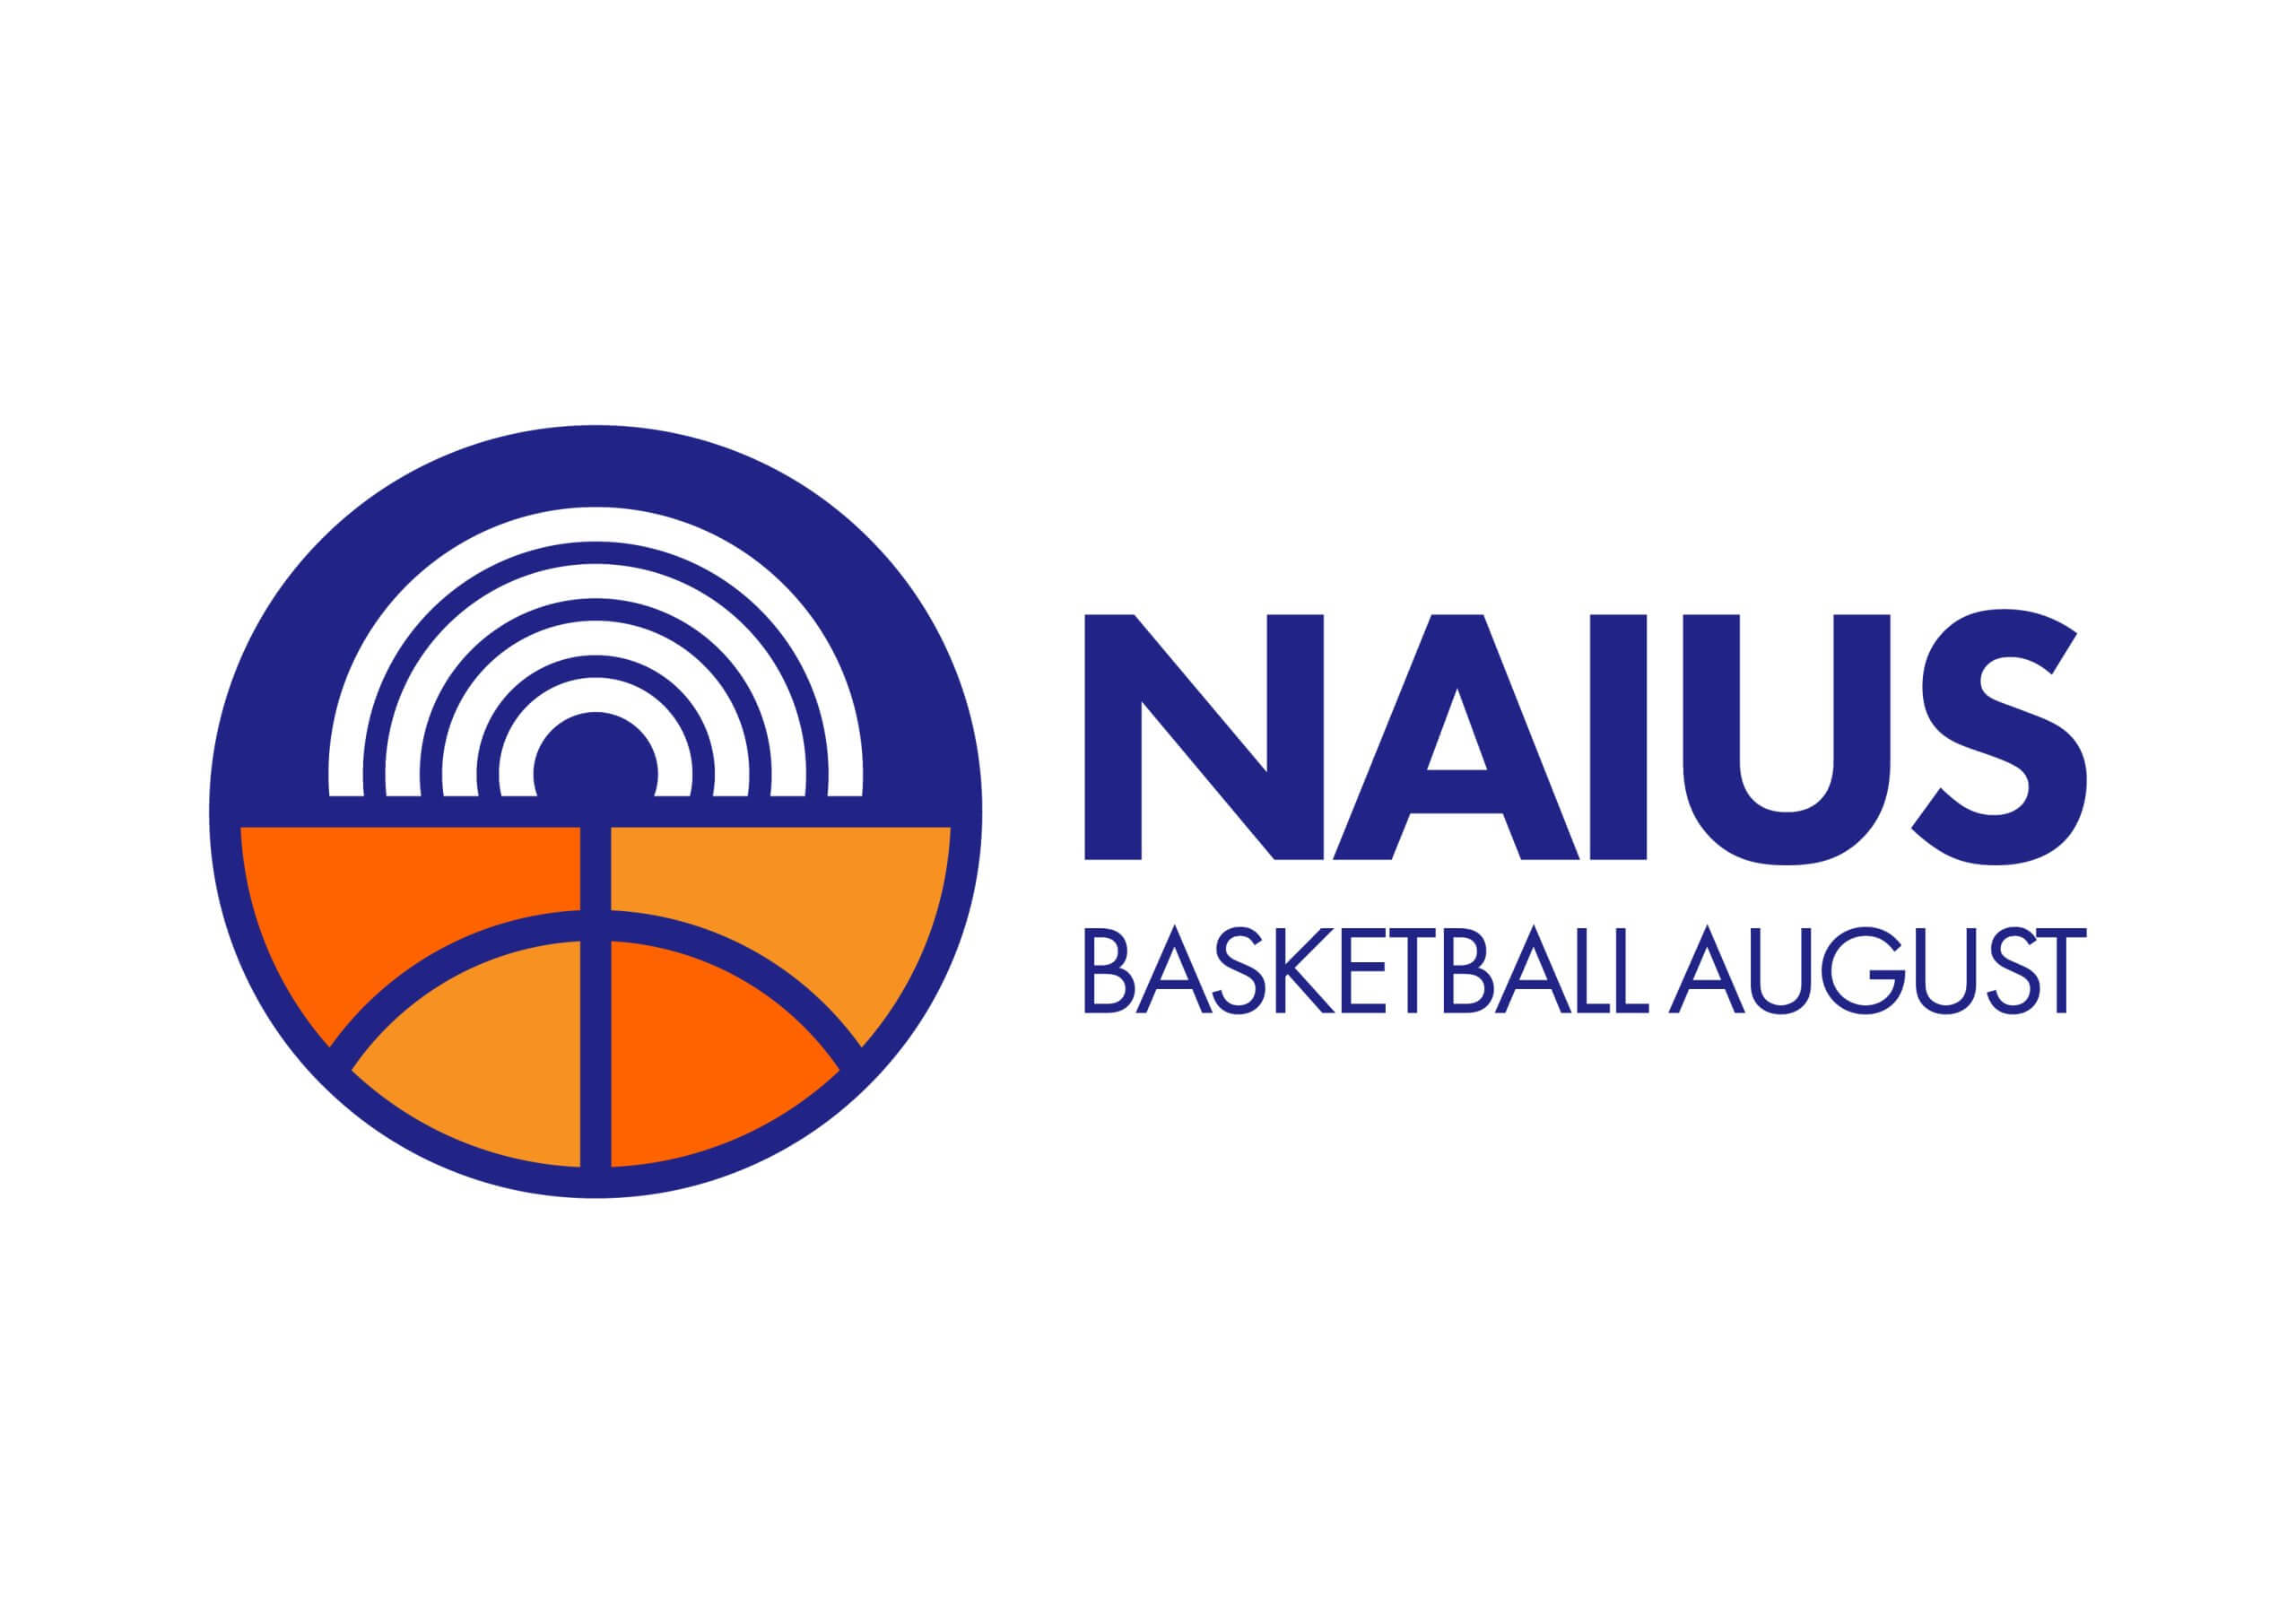 Νάιος Basket-ικός Αύγουστος (NBA)